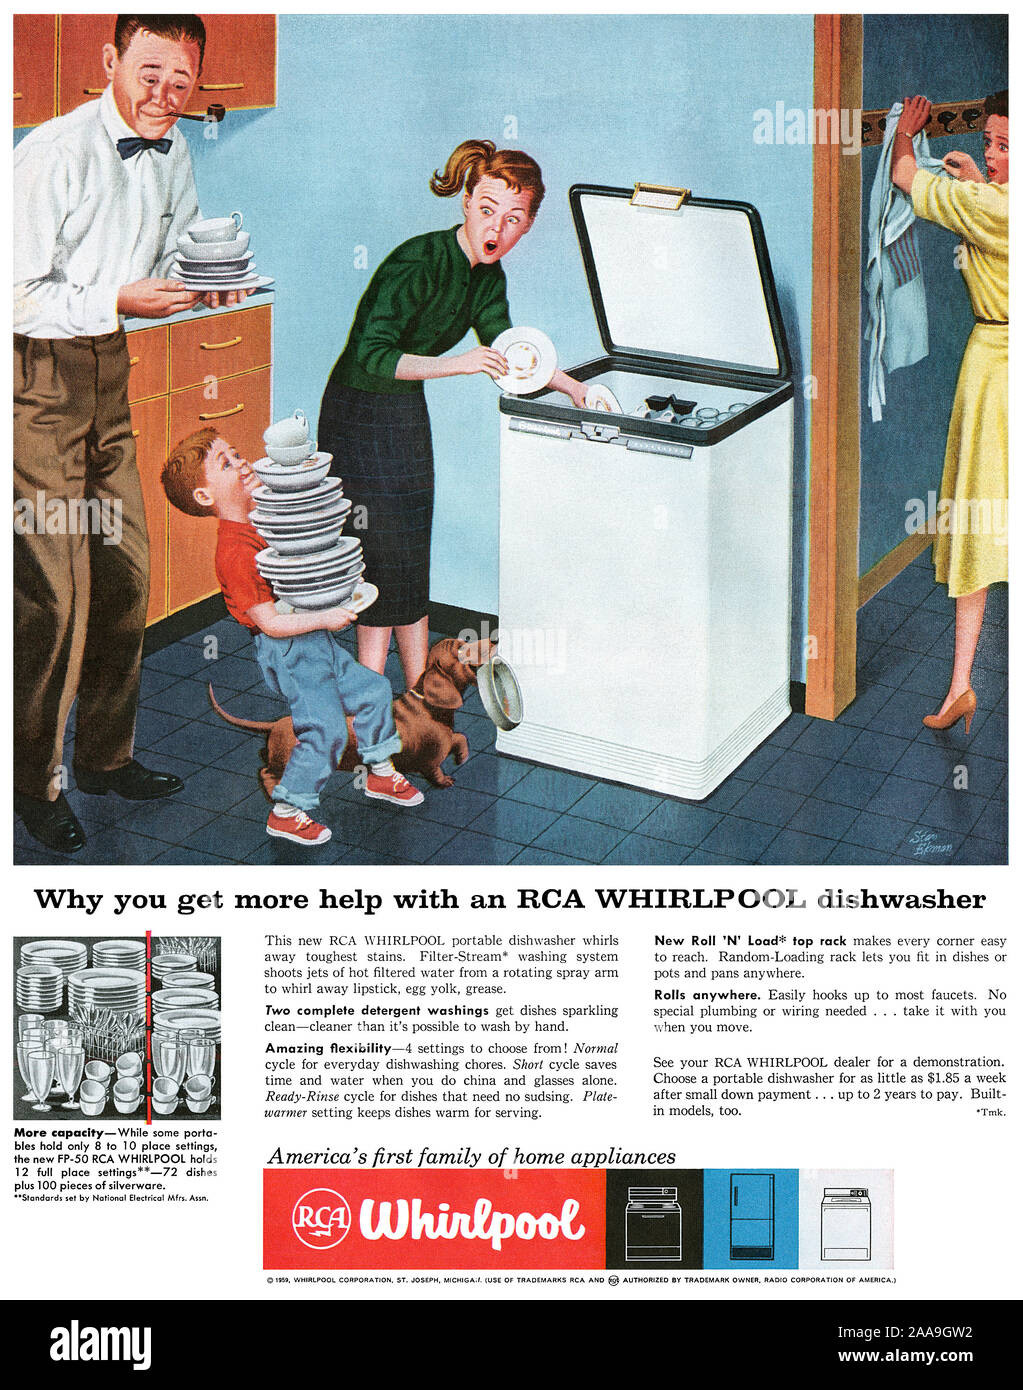 1959 pubblicità negli Stati Uniti per la RCA Whirlpool lavastoviglie Foto  stock - Alamy